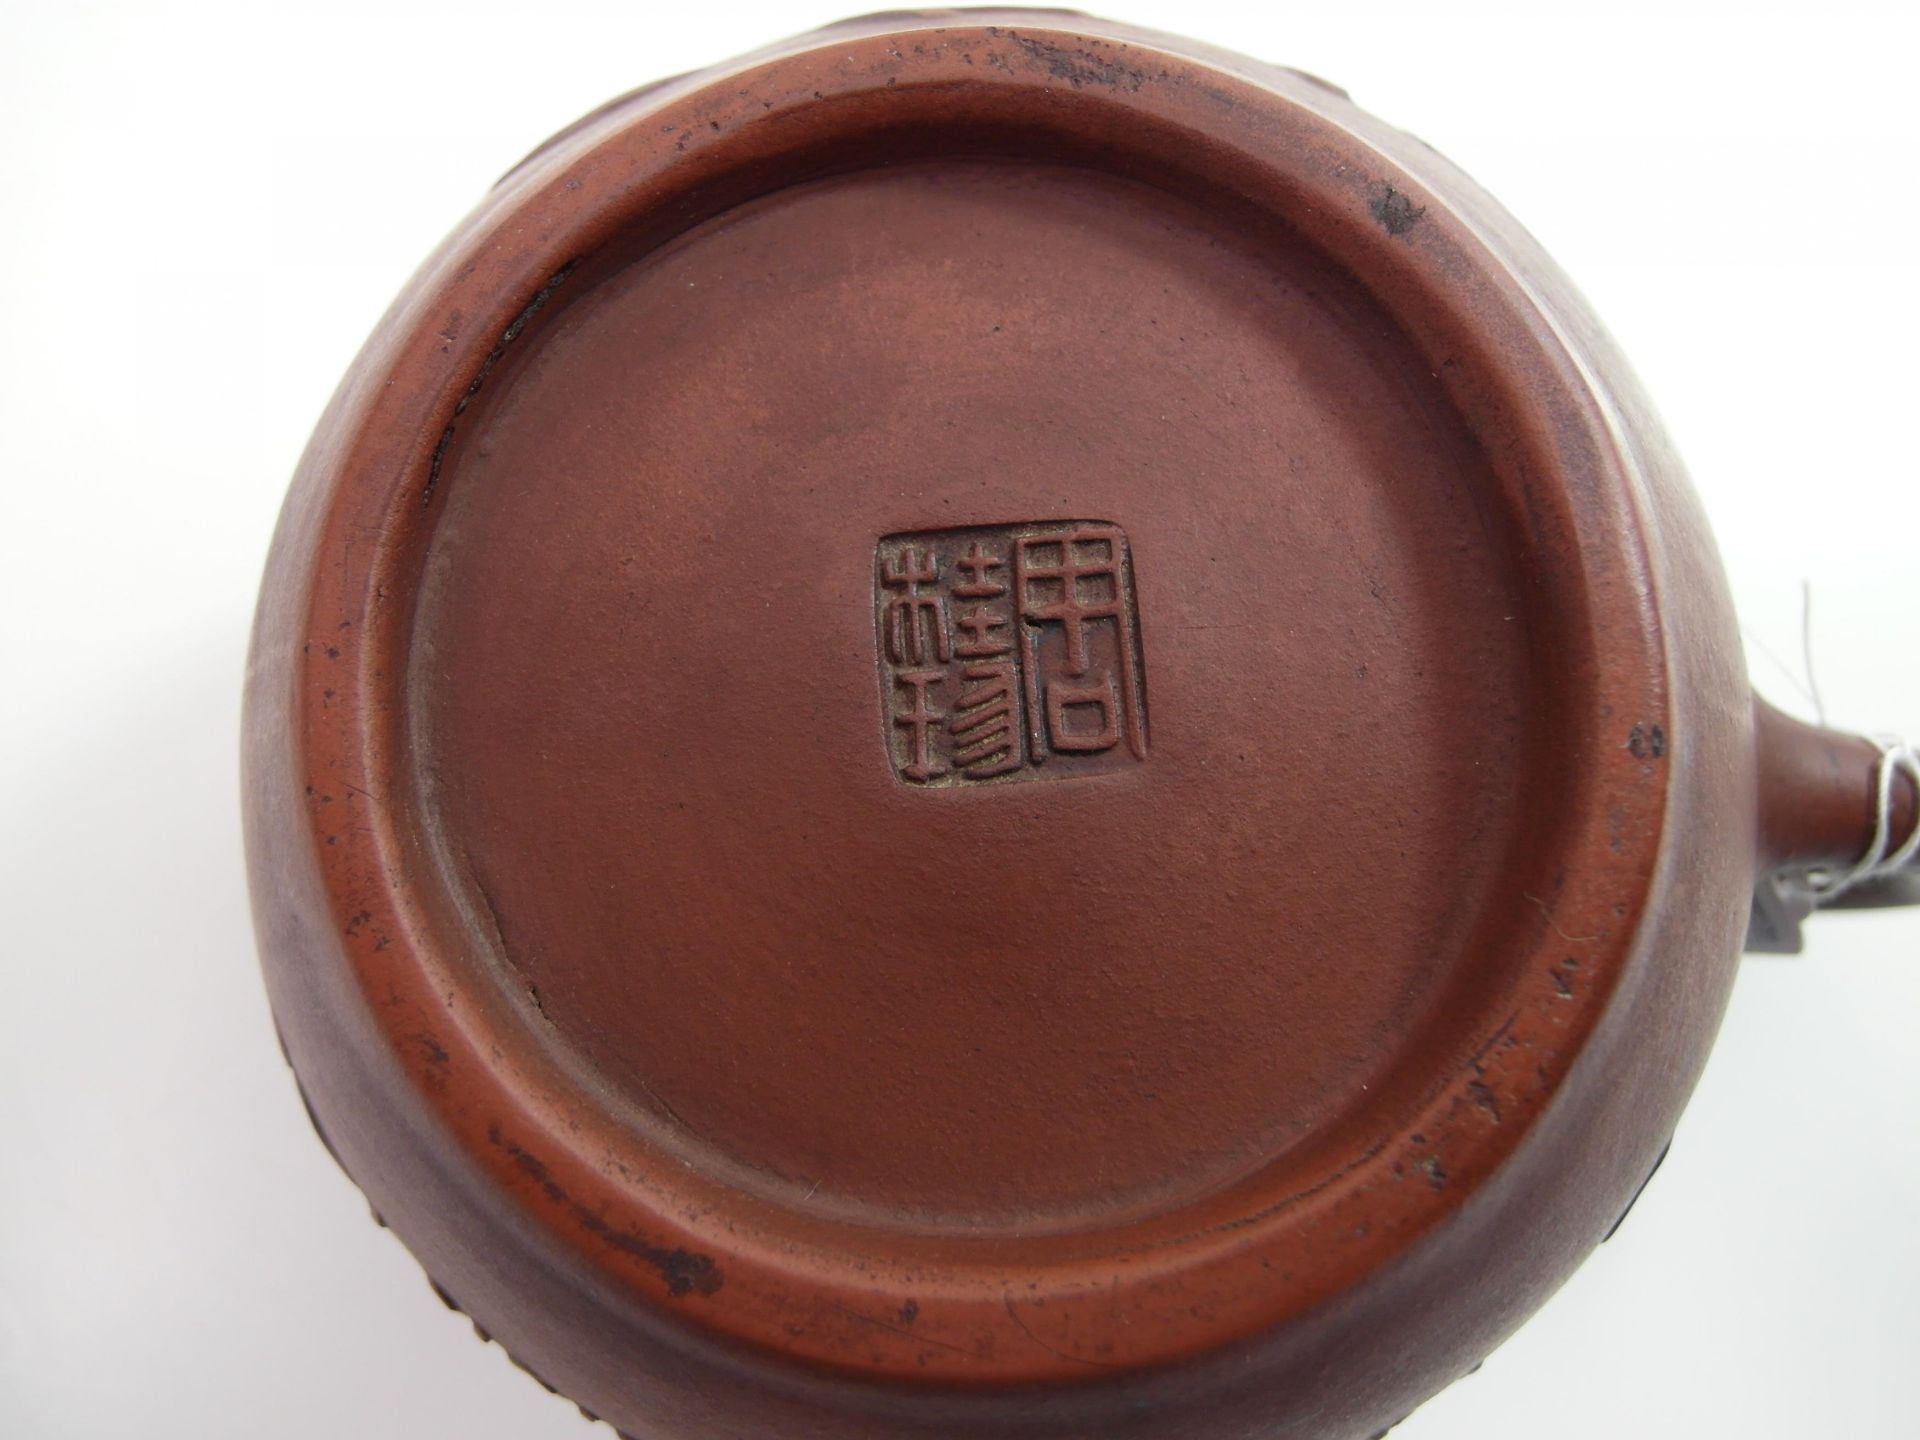 ZWEI ZISHA-TEEKANNEN. China. 20. Jh. Fein modelliertes Yixing-Steinzeug vom Typus zi sha. a) - Bild 5 aus 5